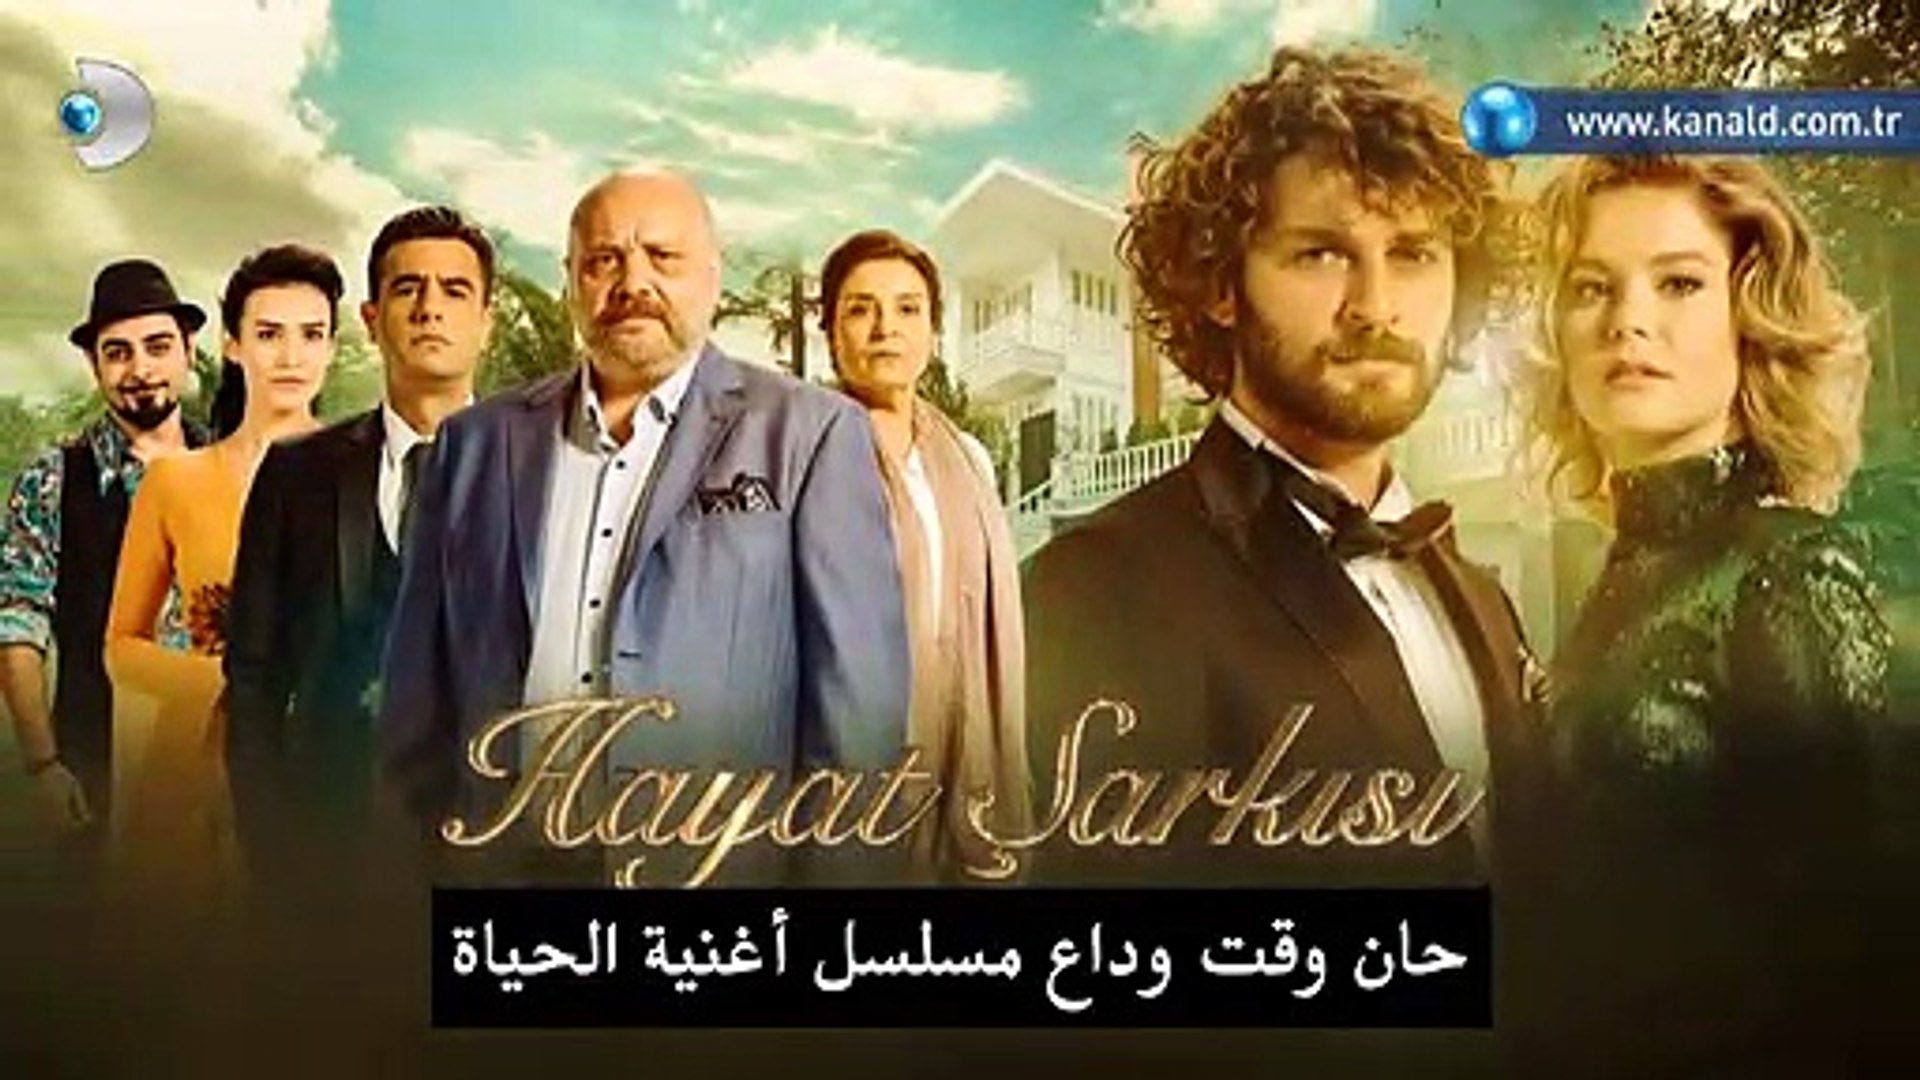 مسلسل أغنية الحياة 2 الموسم الثاني إعلان الحلقة 36 والأخيرة مترجم للعربية Video Dailymotion